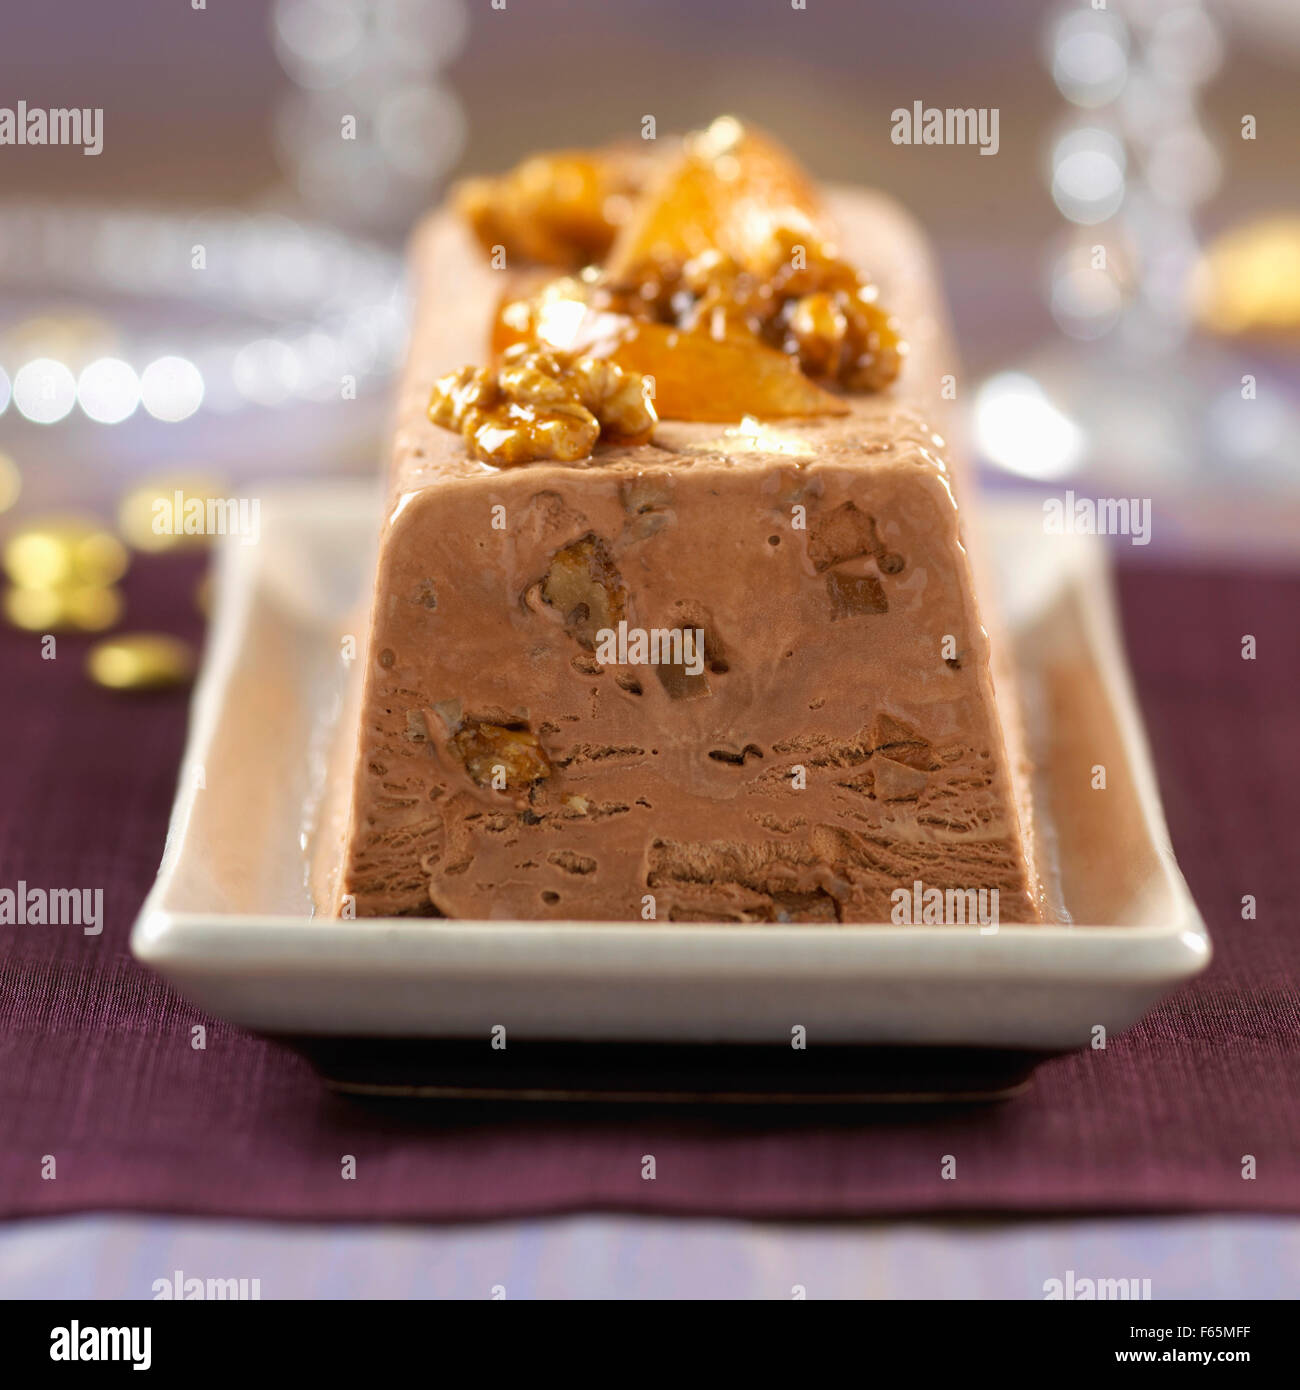 chocolate terrine Stock Photo